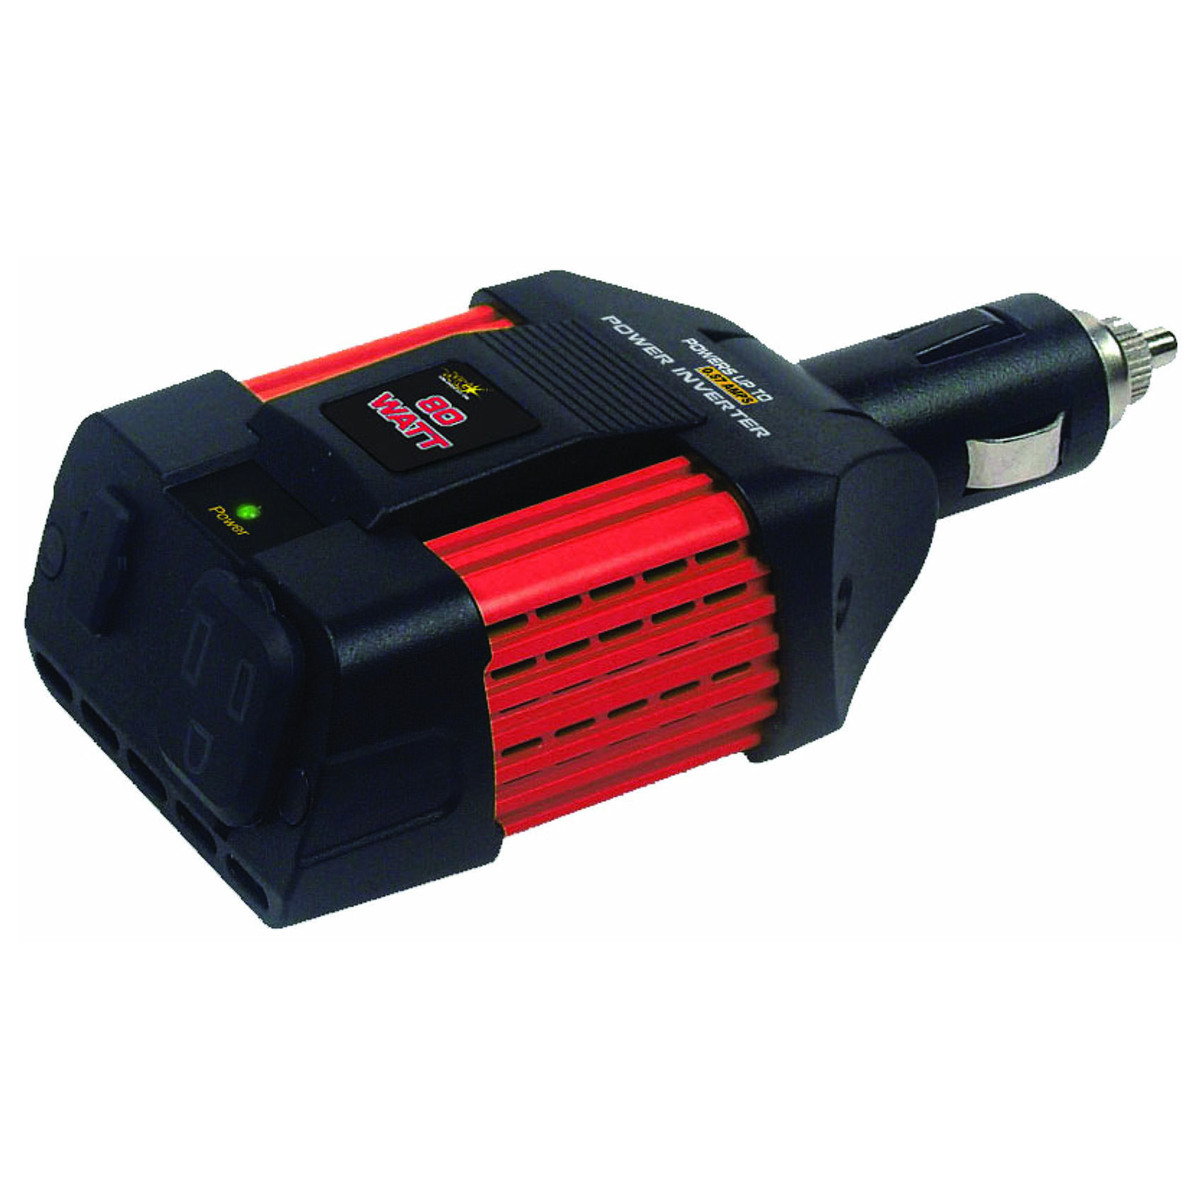 NRG 80 Watt 12 Volt to 110 Volt Power Inverter 50-360 56986007236 | eBay